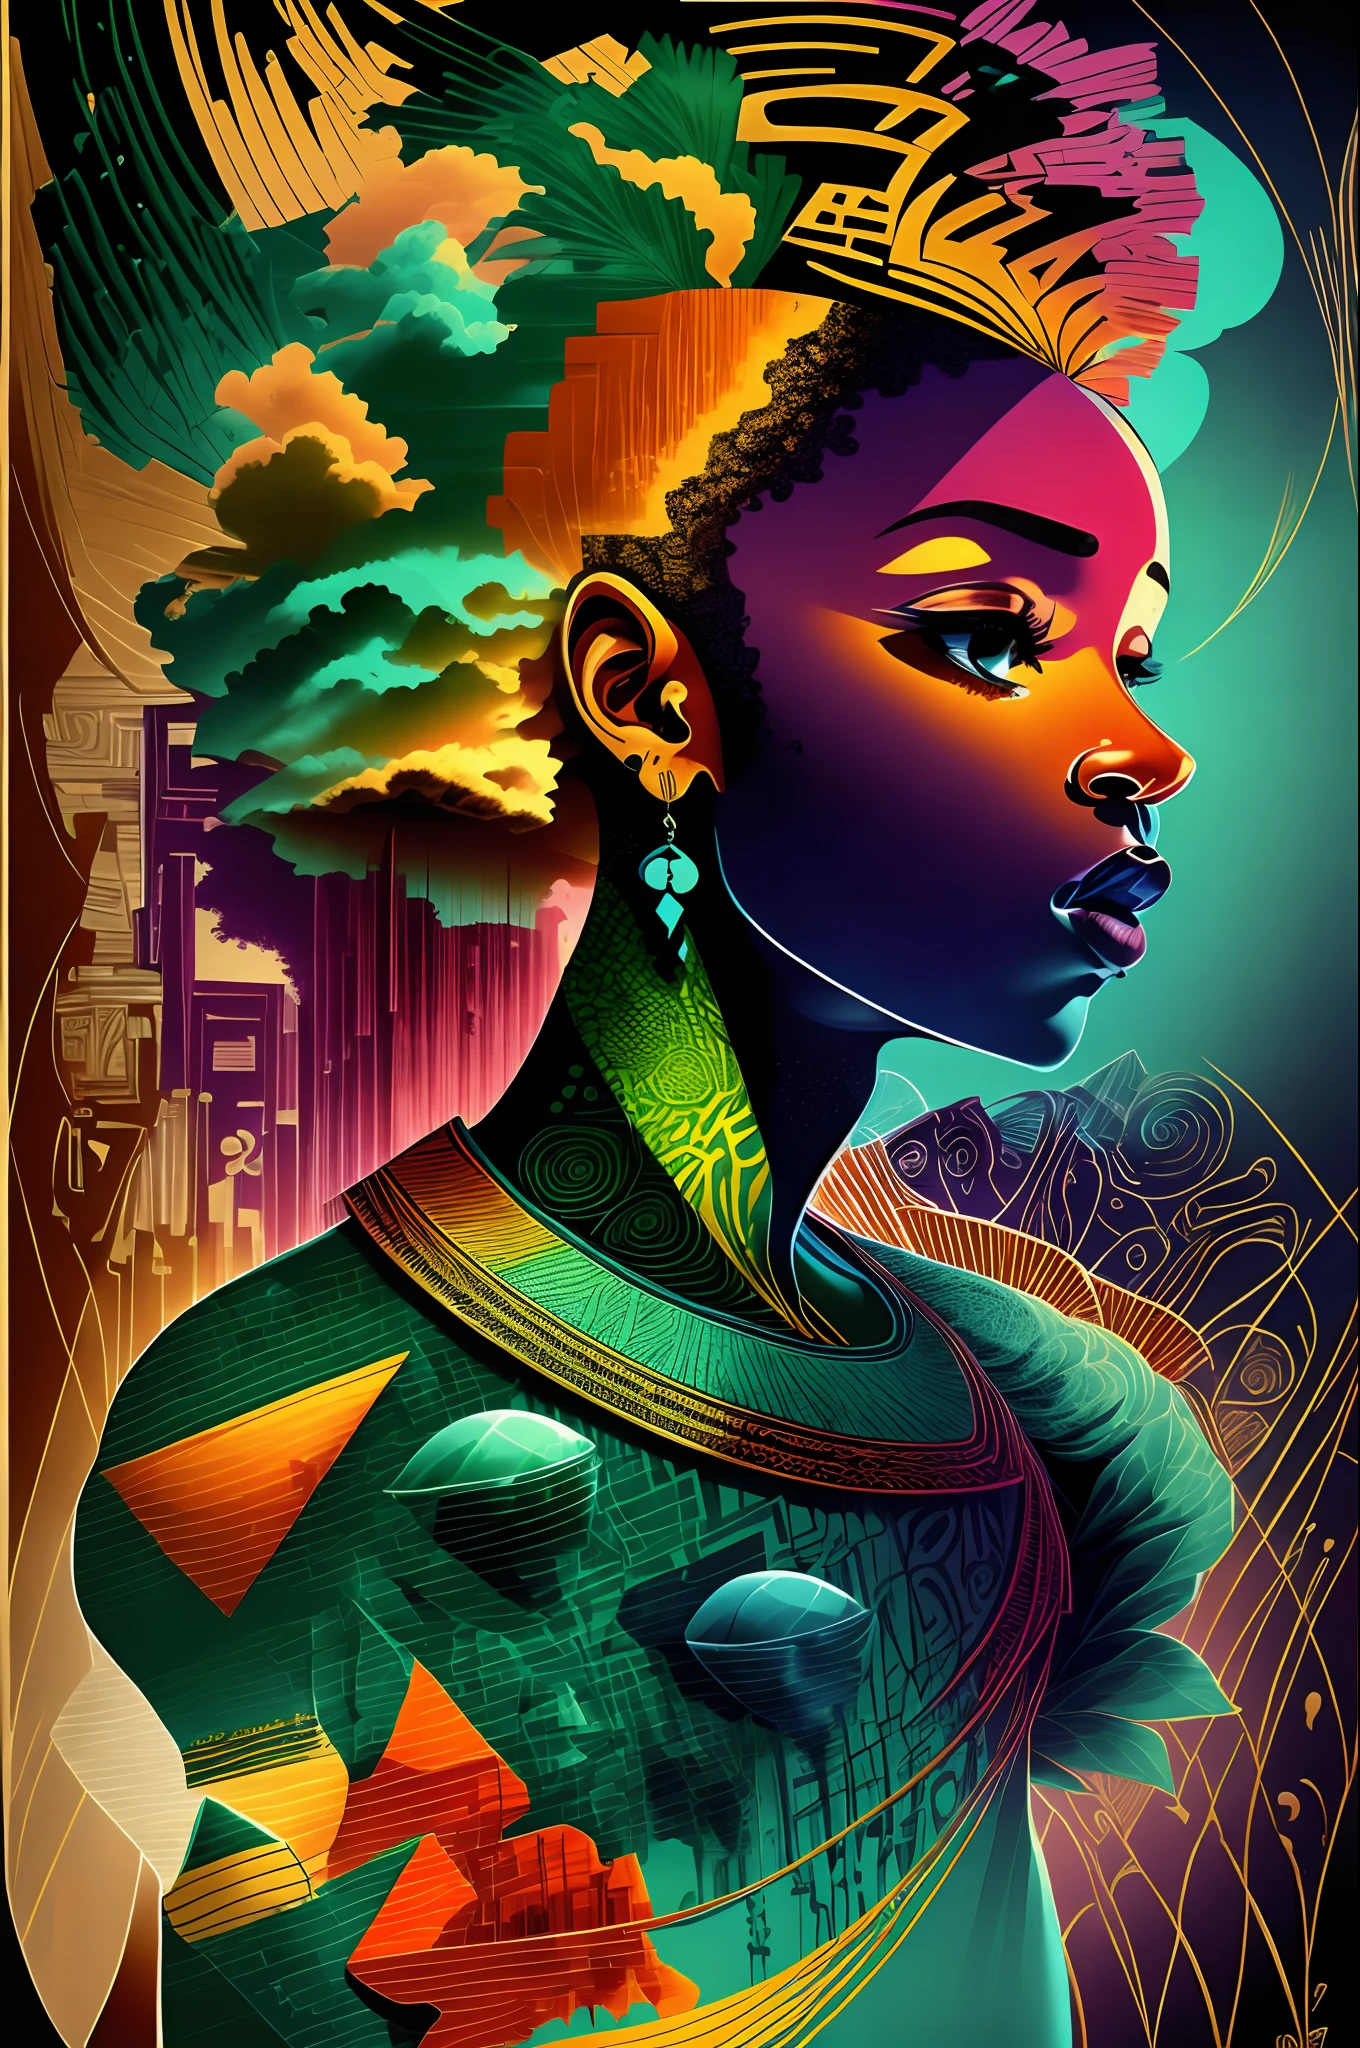 Минималист, дизайн футболки в винтажном стиле, африканское абстрактное искусство, эмоциональный, воодушевляющий, три цвета, синий, Зеленый, прохладный, Распечатать, Силуэт, Африканские люди, Африканская культура, Африканская мода, представление Африки --auto --s2